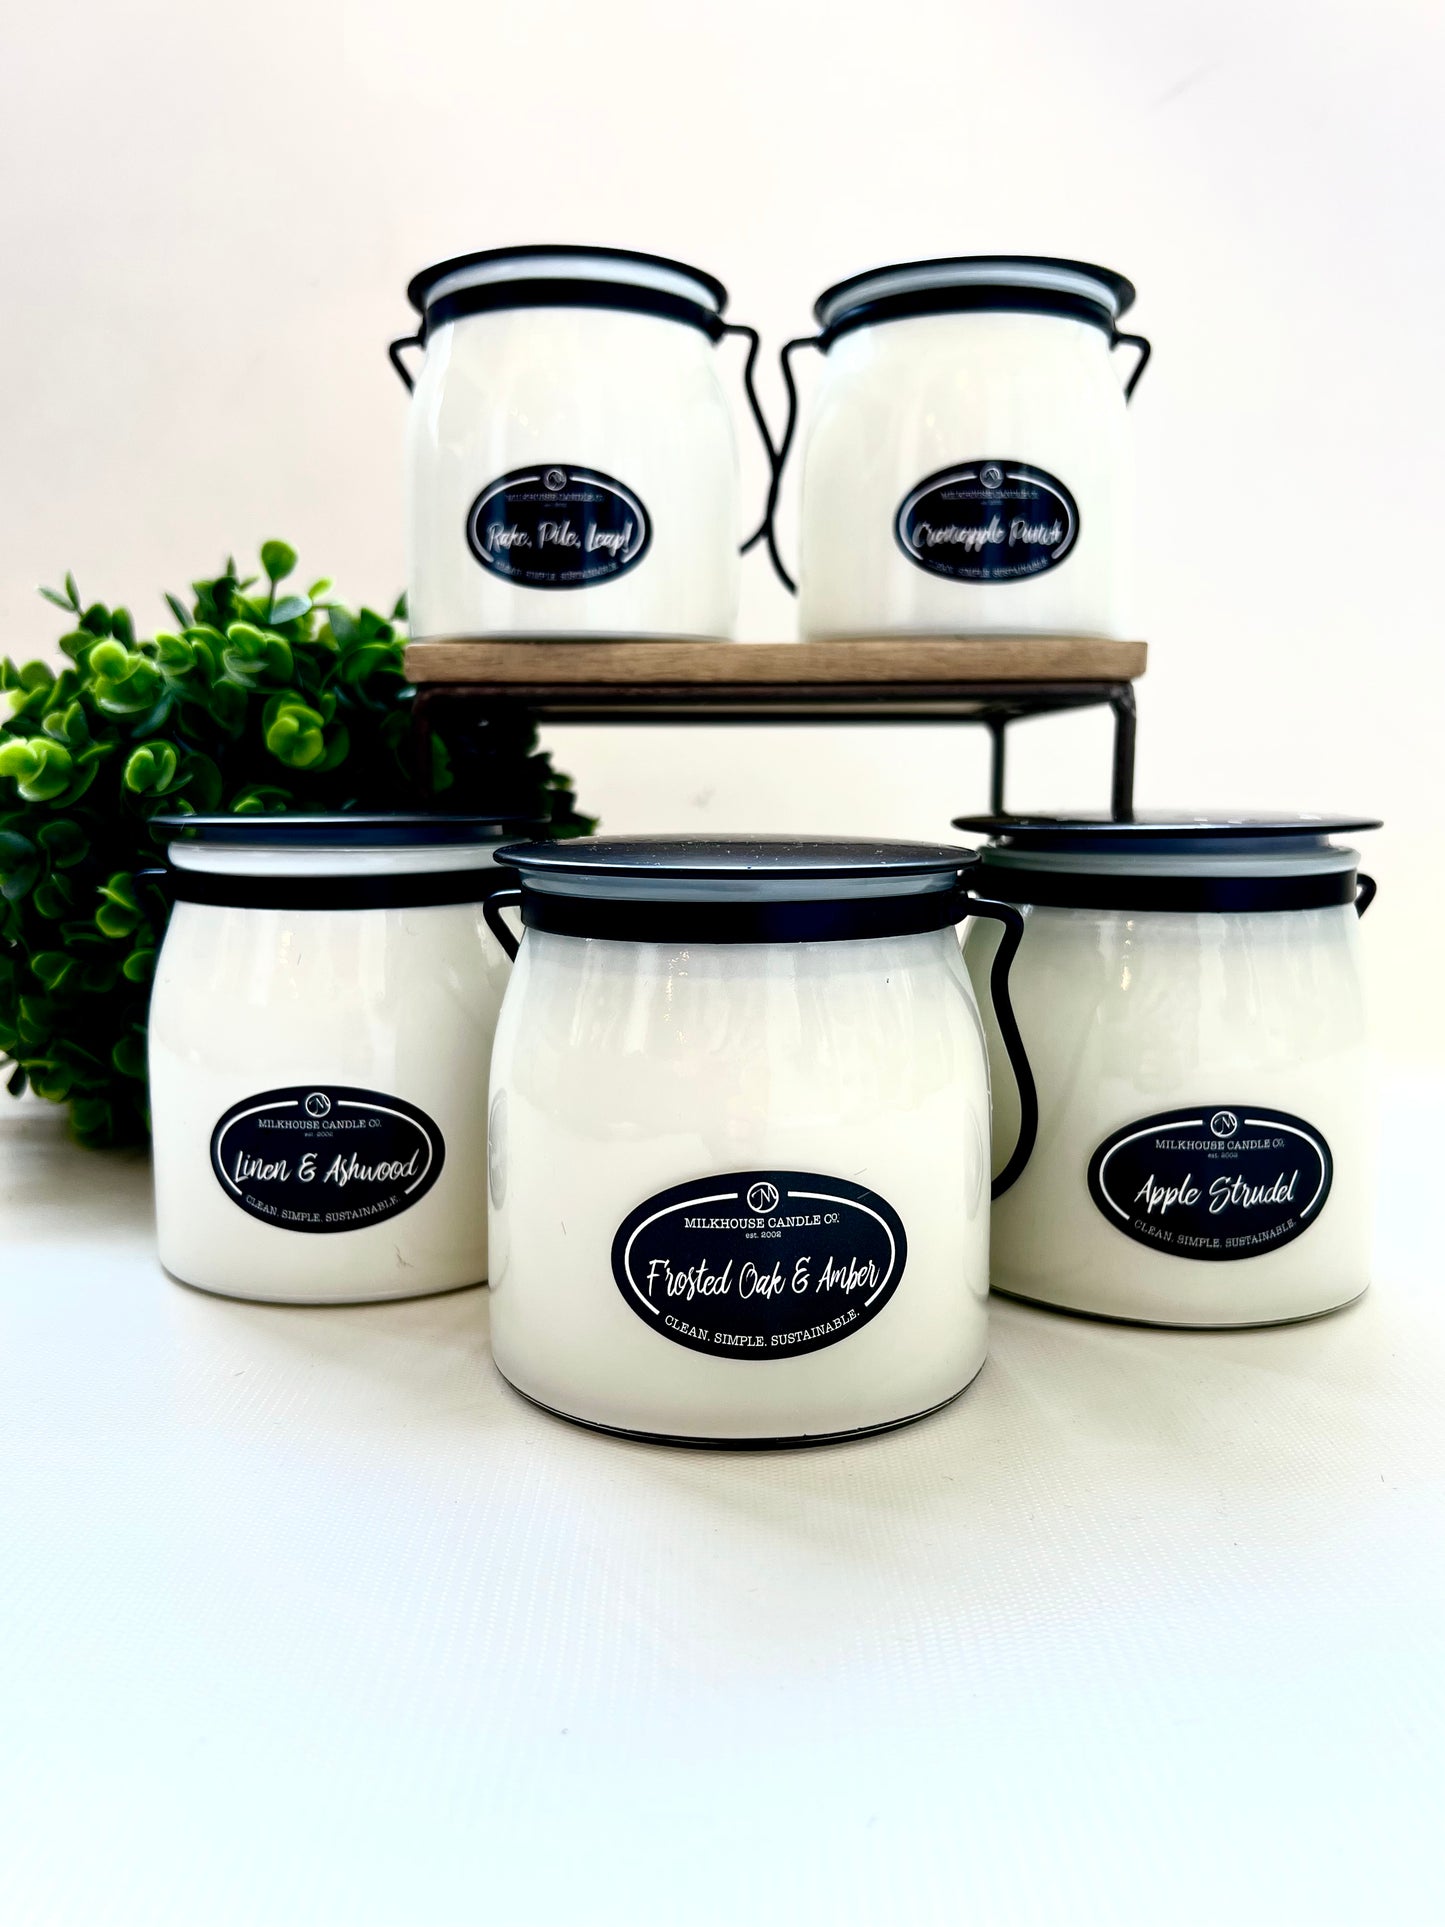 Milkhouse Candle - Apple Strudel 16 oz Butter Jar